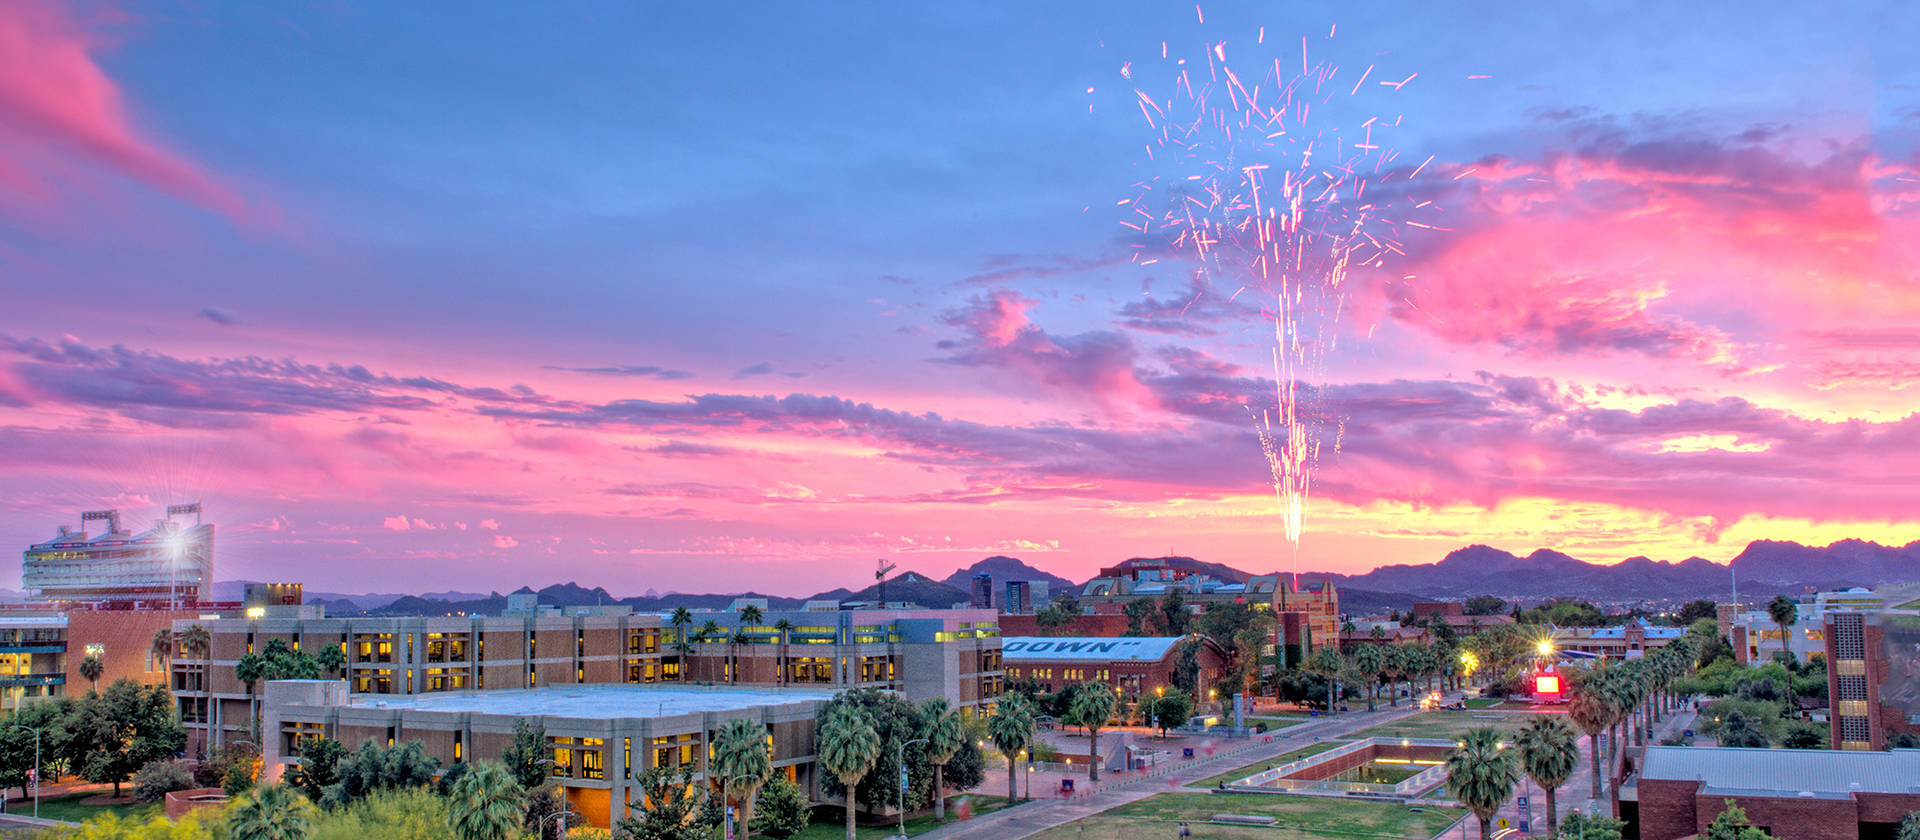 Sunset University Of Arizona Background